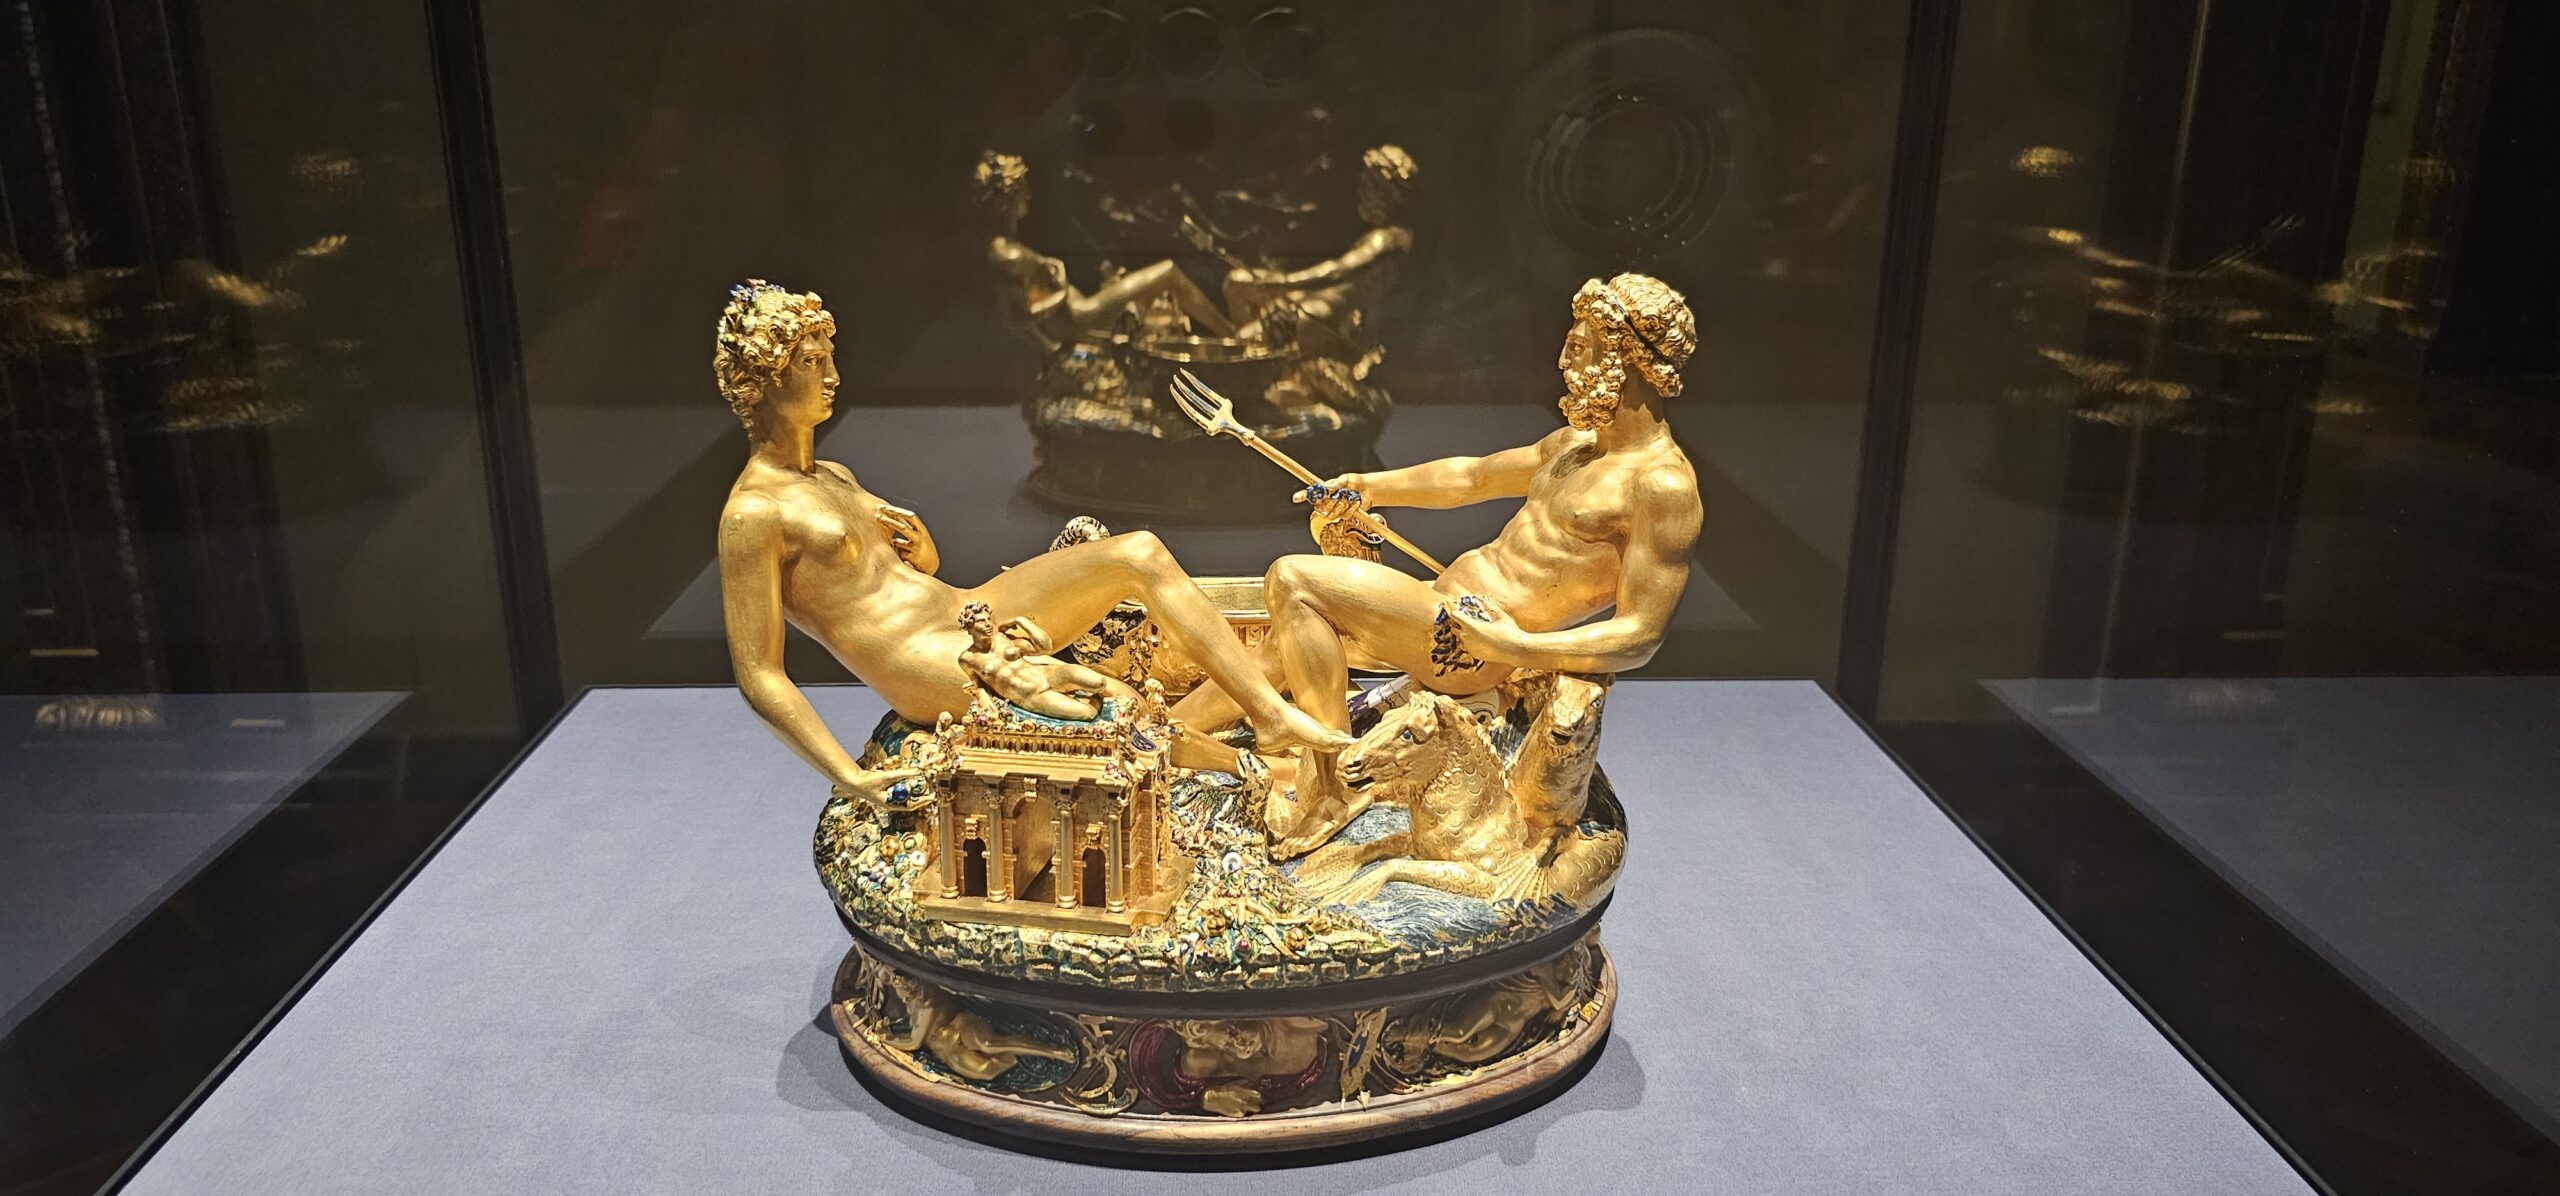 The golden Cellini Salt Celler, a part-enamelled gold table sculpture by Benvenuto Cellini.